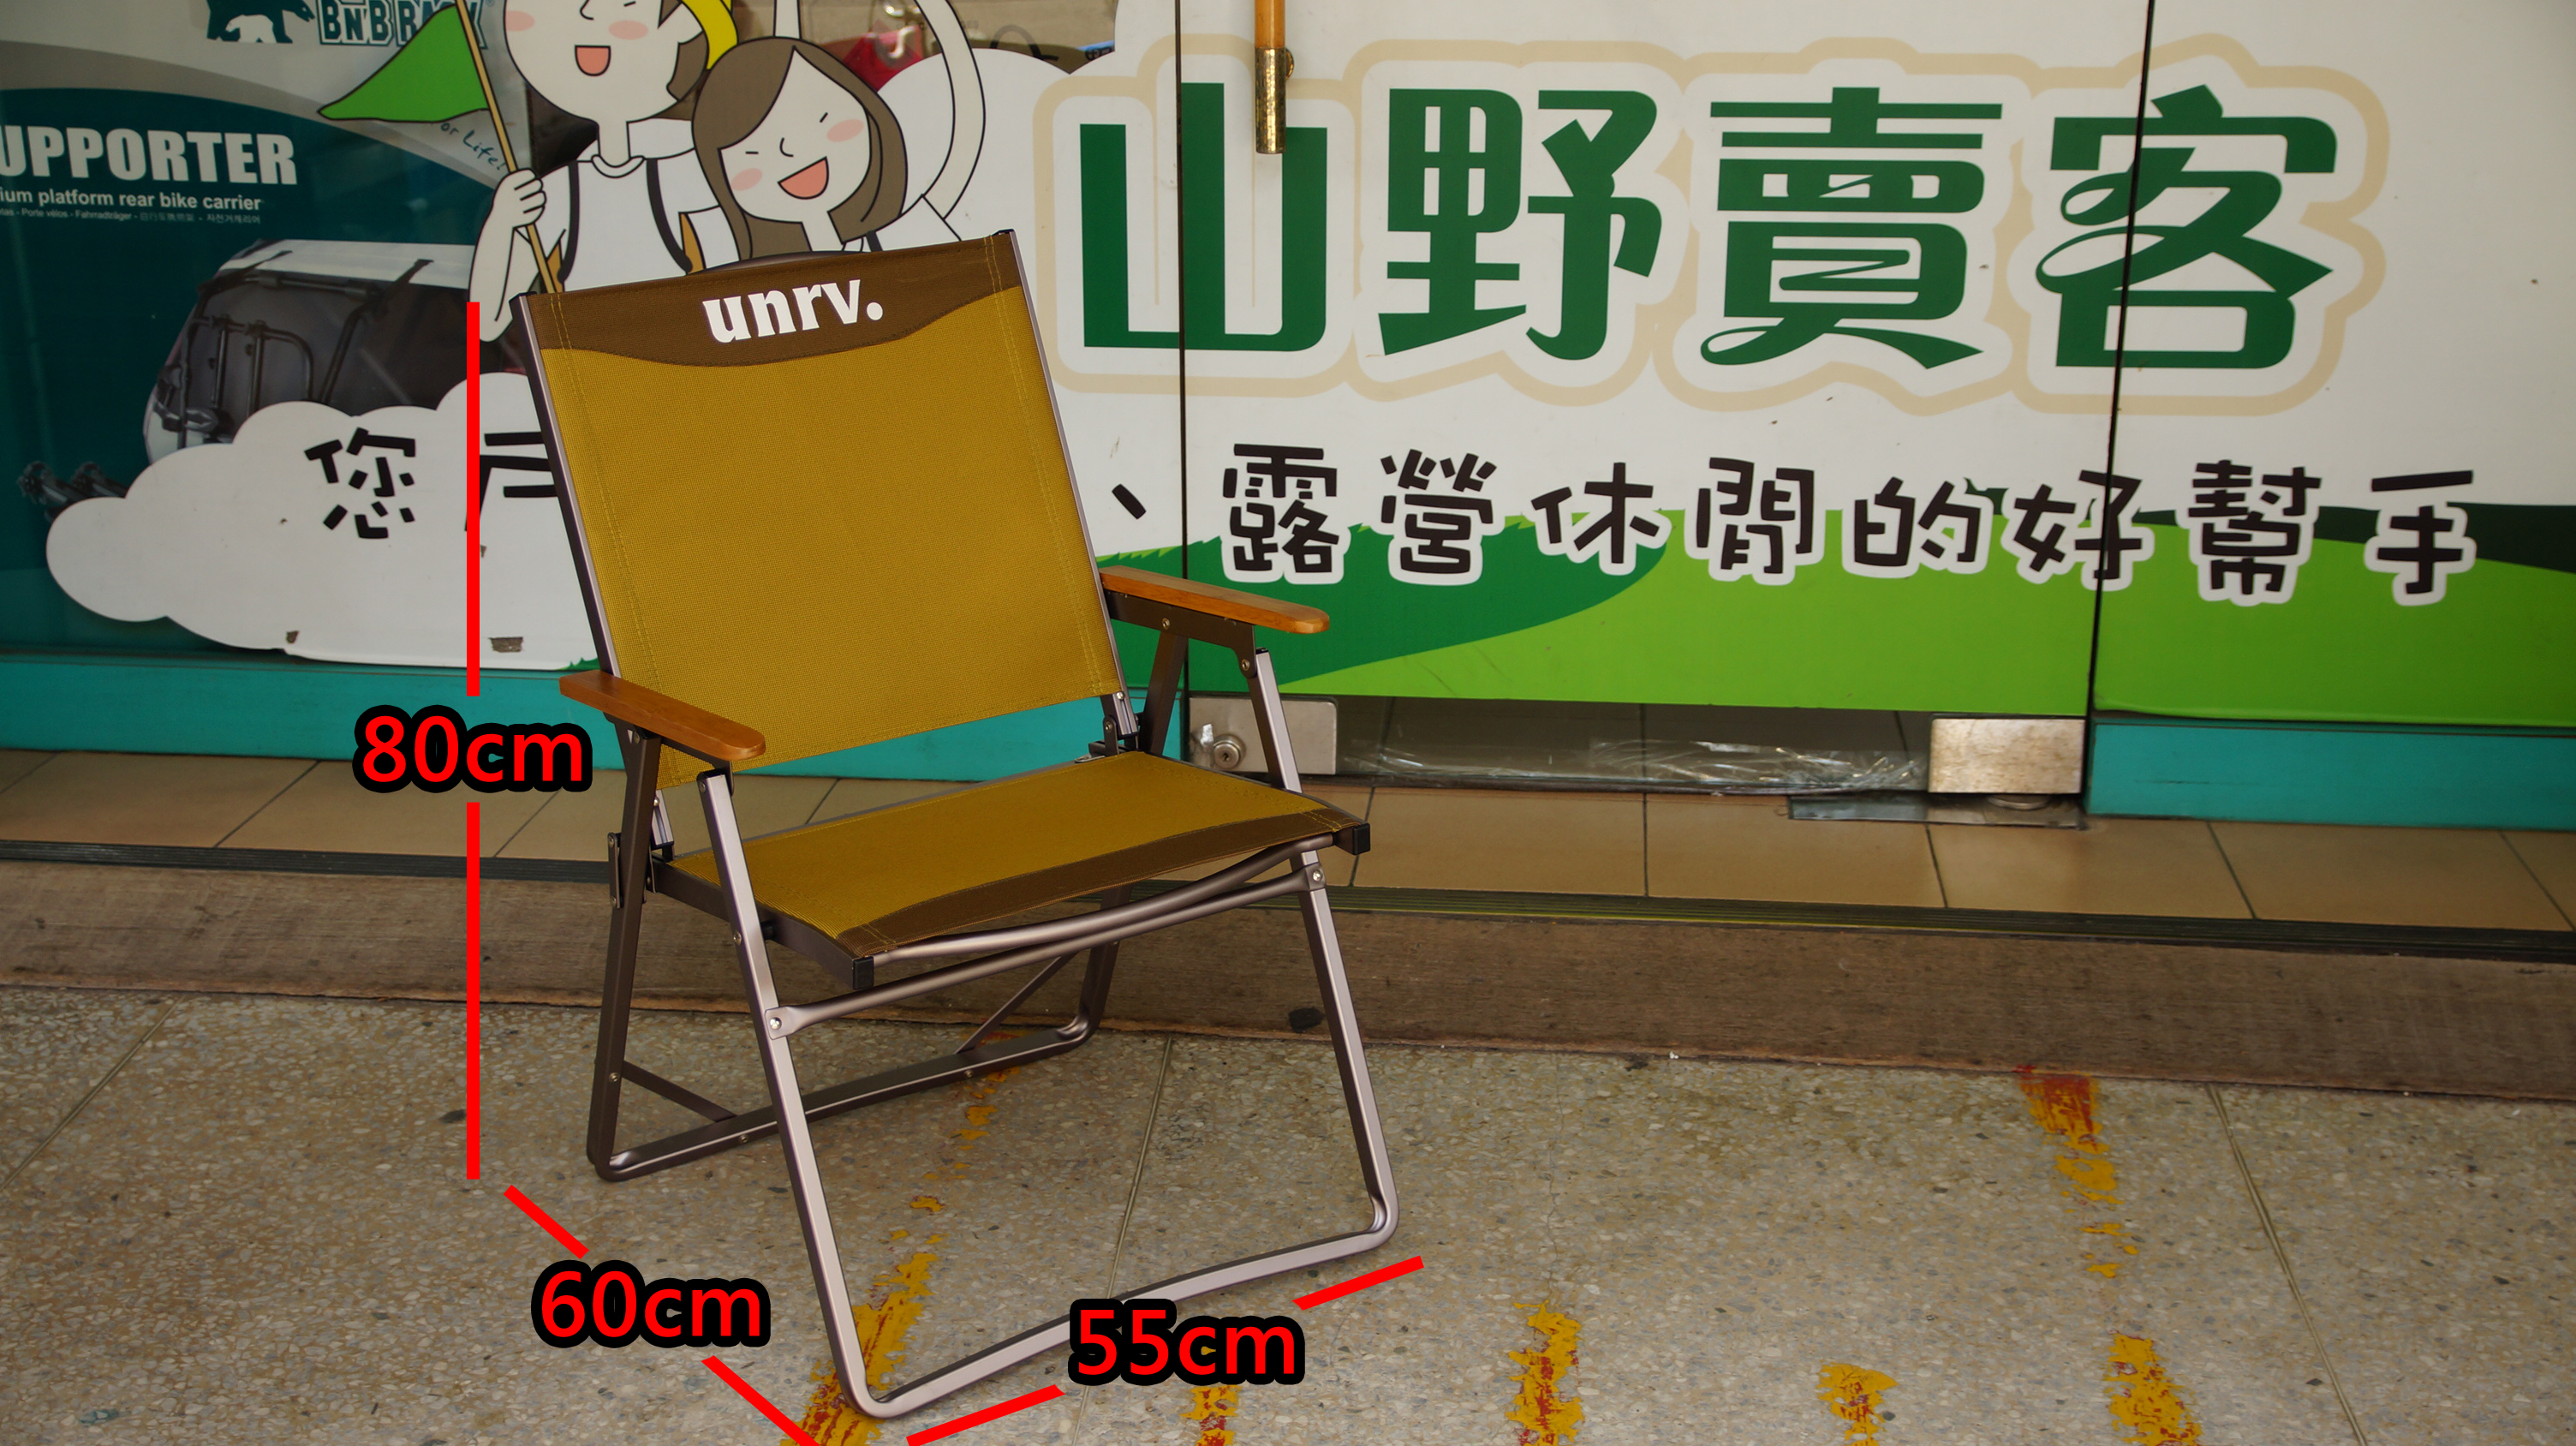 UNRV 咖啡椅 適女性/兒童乘坐 質輕 折疊椅 大川椅 休閒椅